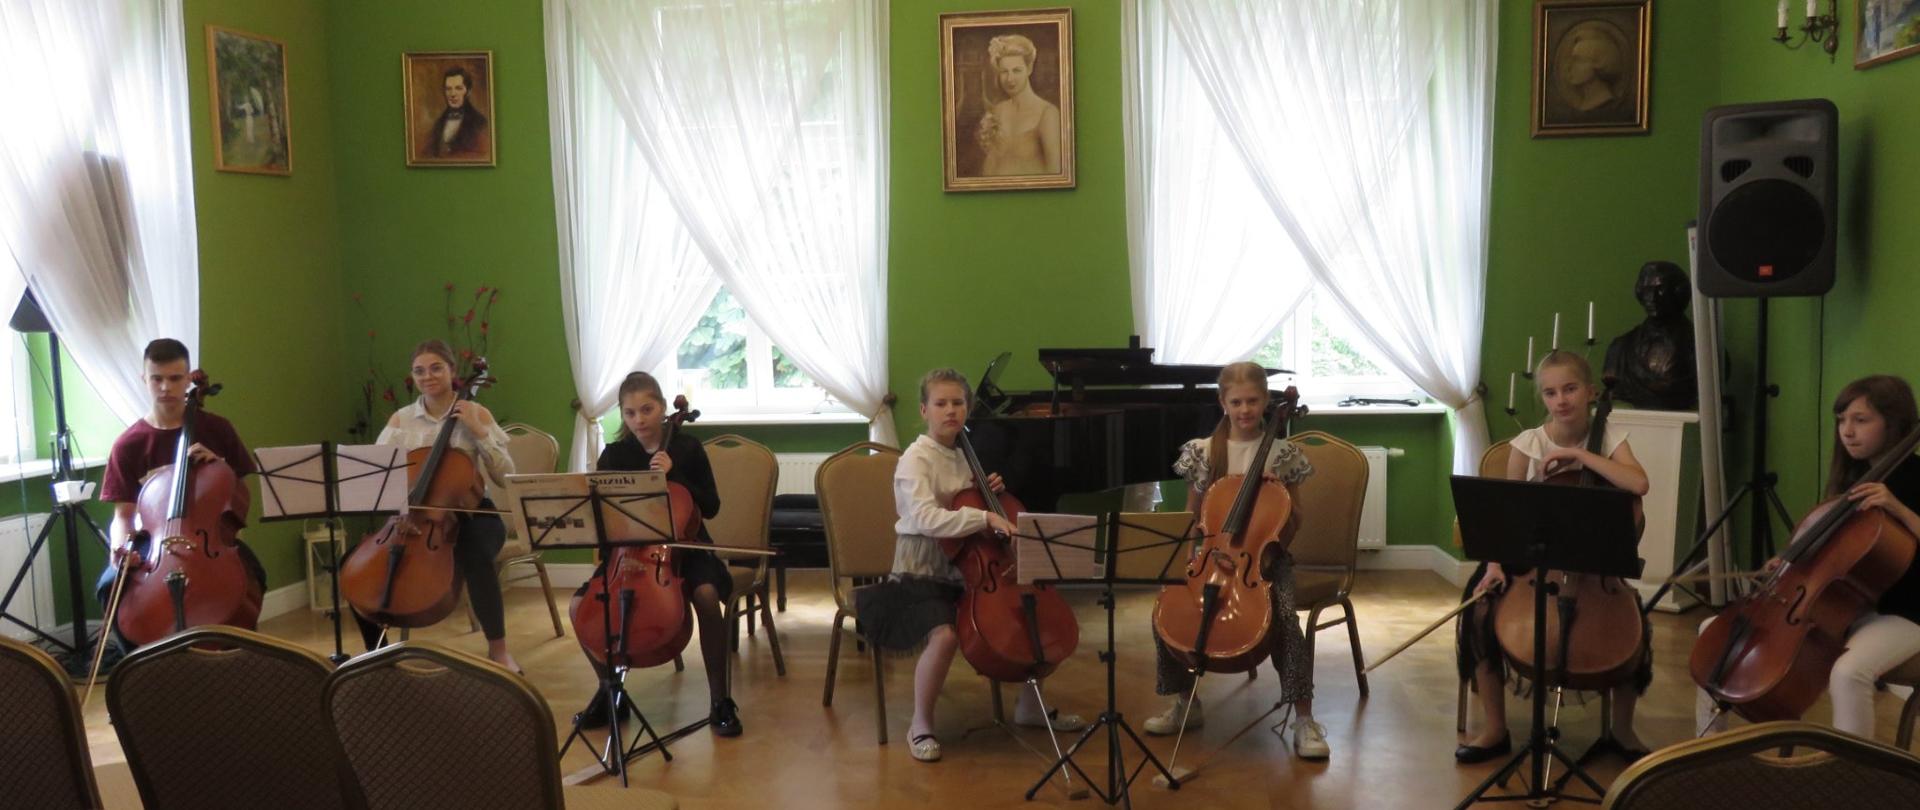 Zespół wiolonczelowy siedzi na krzesłach, 6 dziewczynek i 1 chłopiec, trzymają instrumenty, w ręku smyczki, w tle fortepian i portret Melanii Bronikowskiej i Fryderyka Chopina